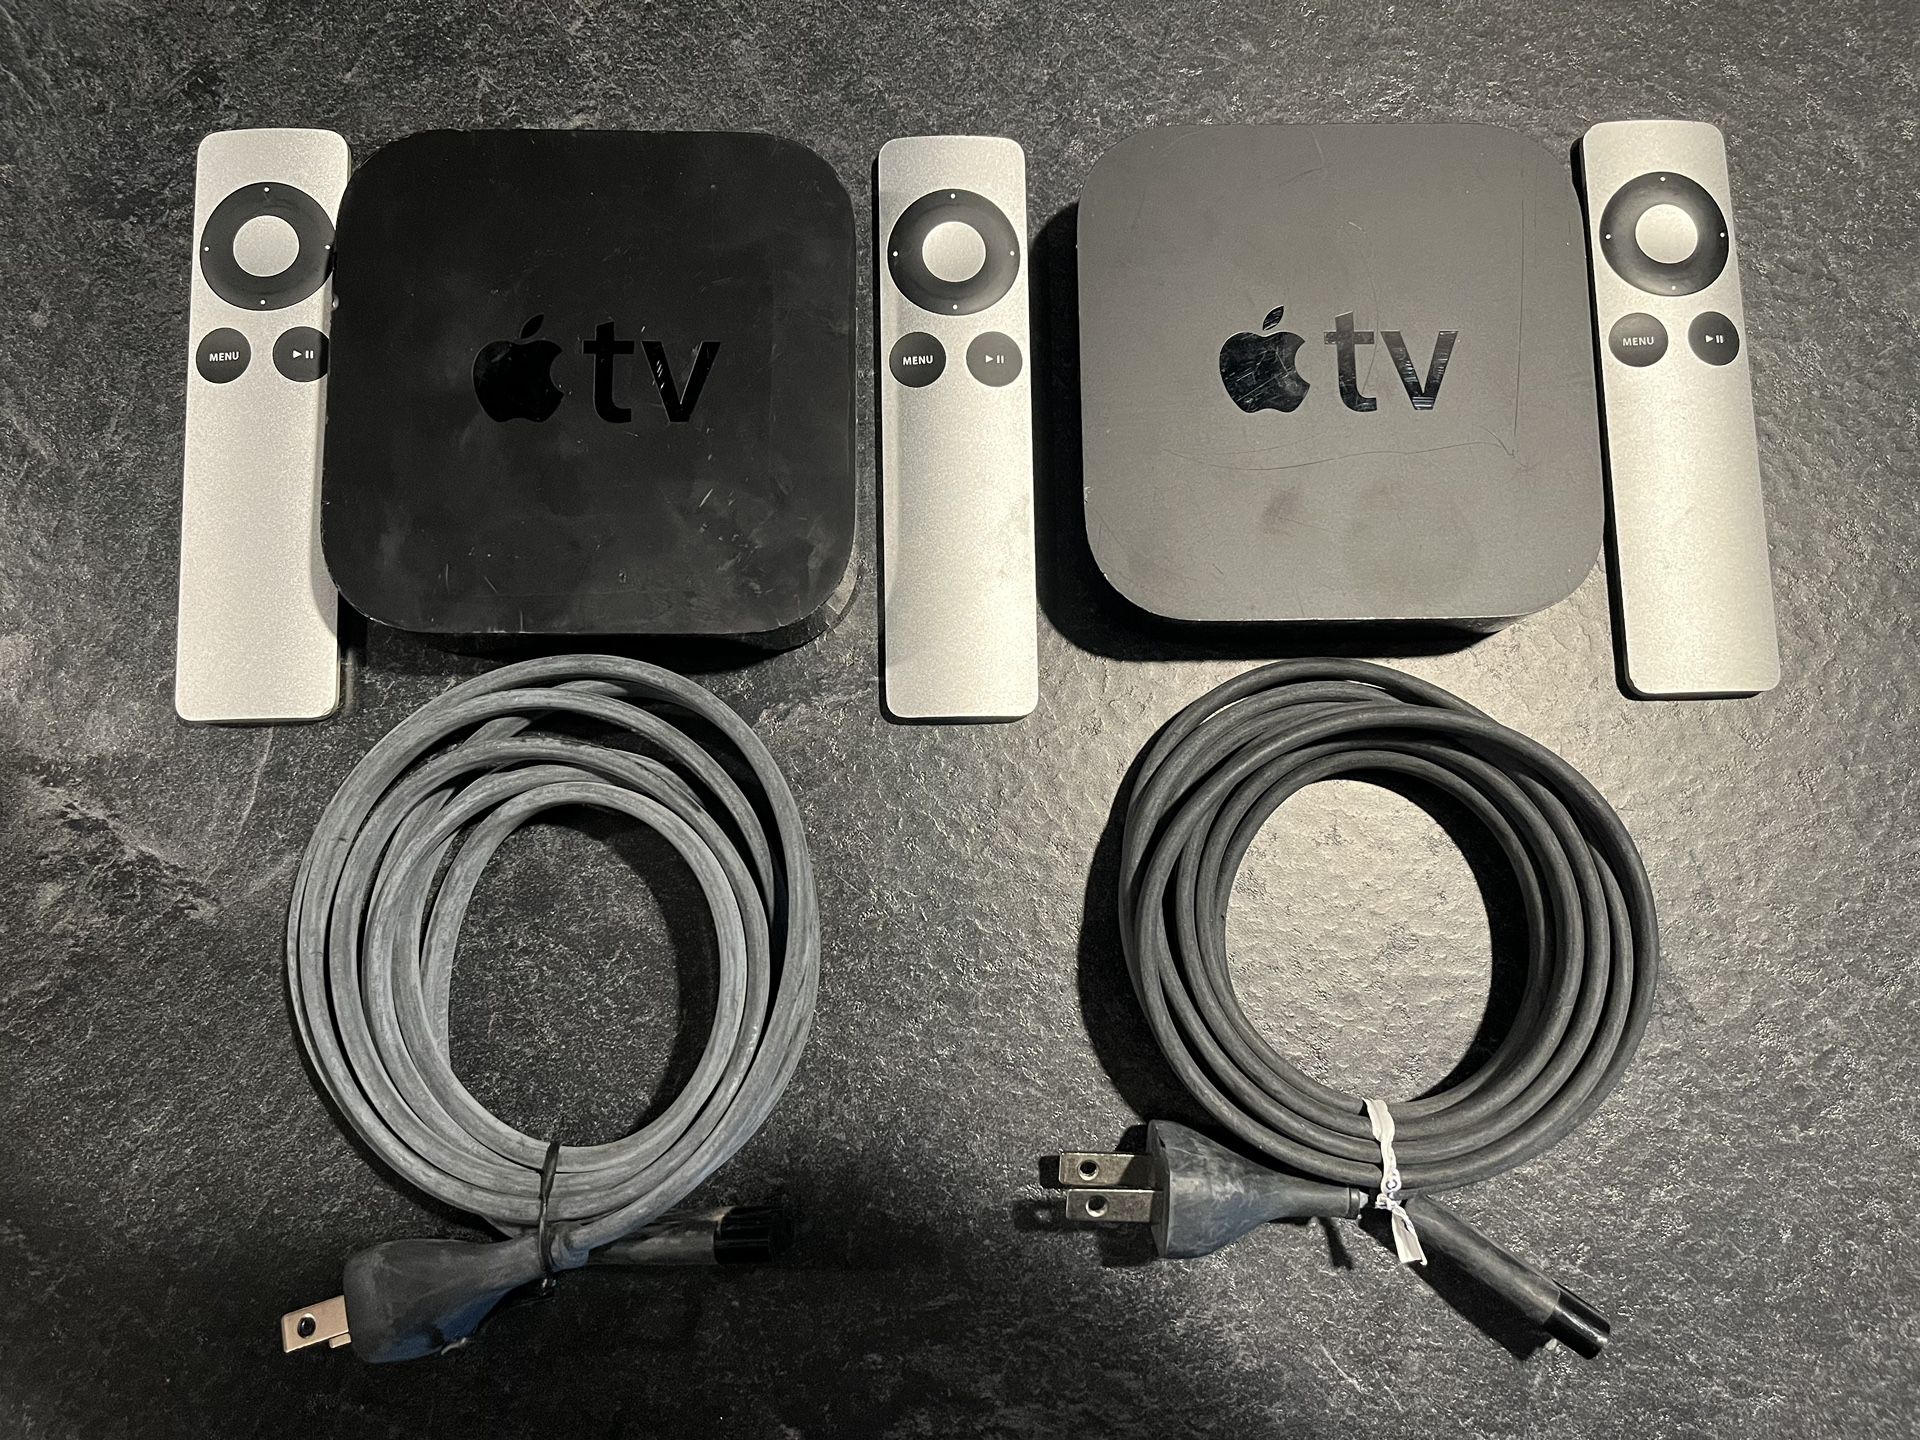 Apple Tv Media Streamer (3rd Generation)